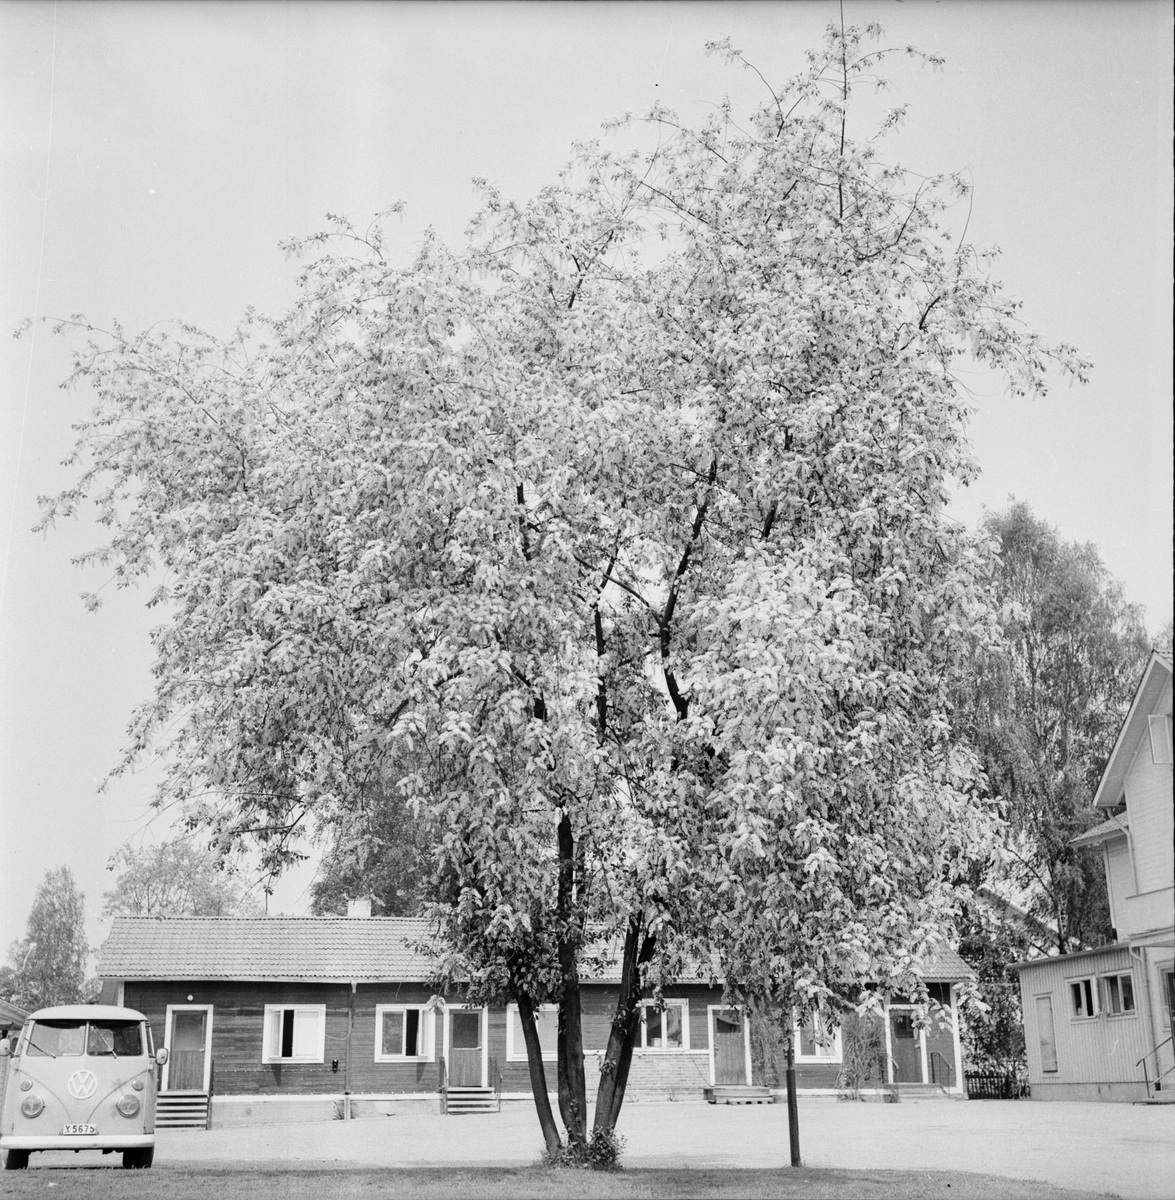 Arbrå,
Hägg,
Blommande vid värdshuset,
Juni 1972